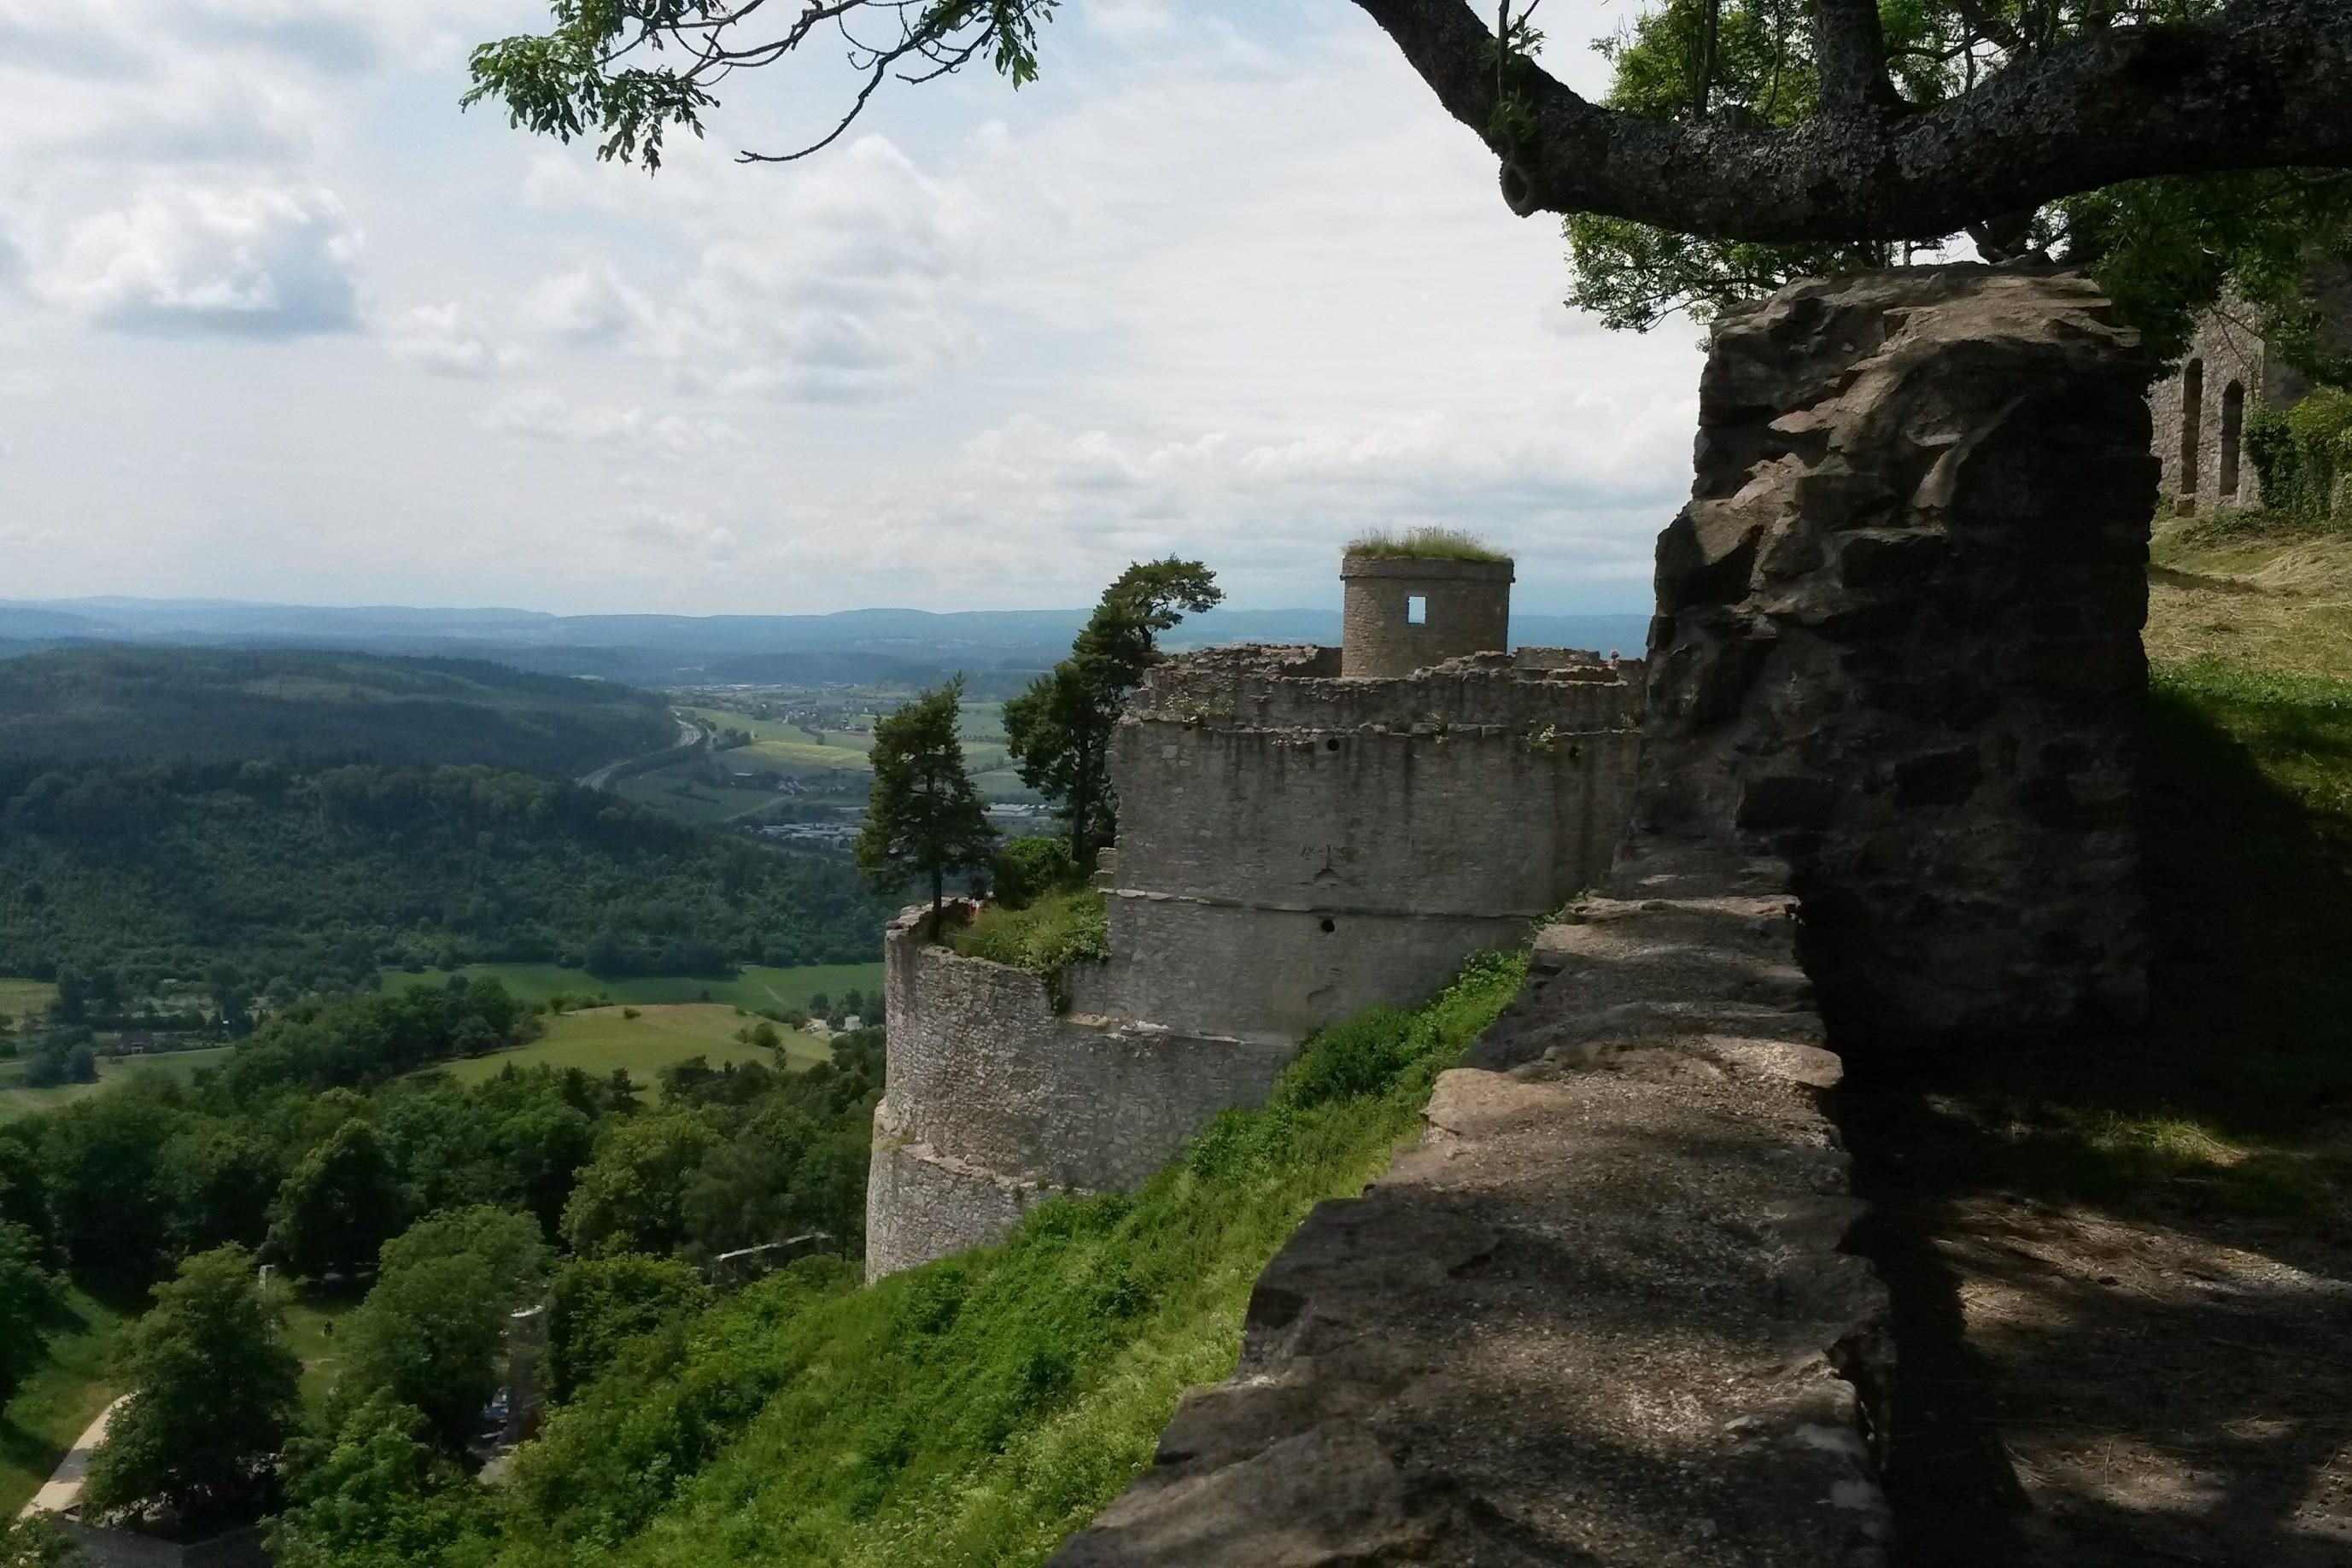 Festungsruine Hohentwiel, Ausblick auf das Umland